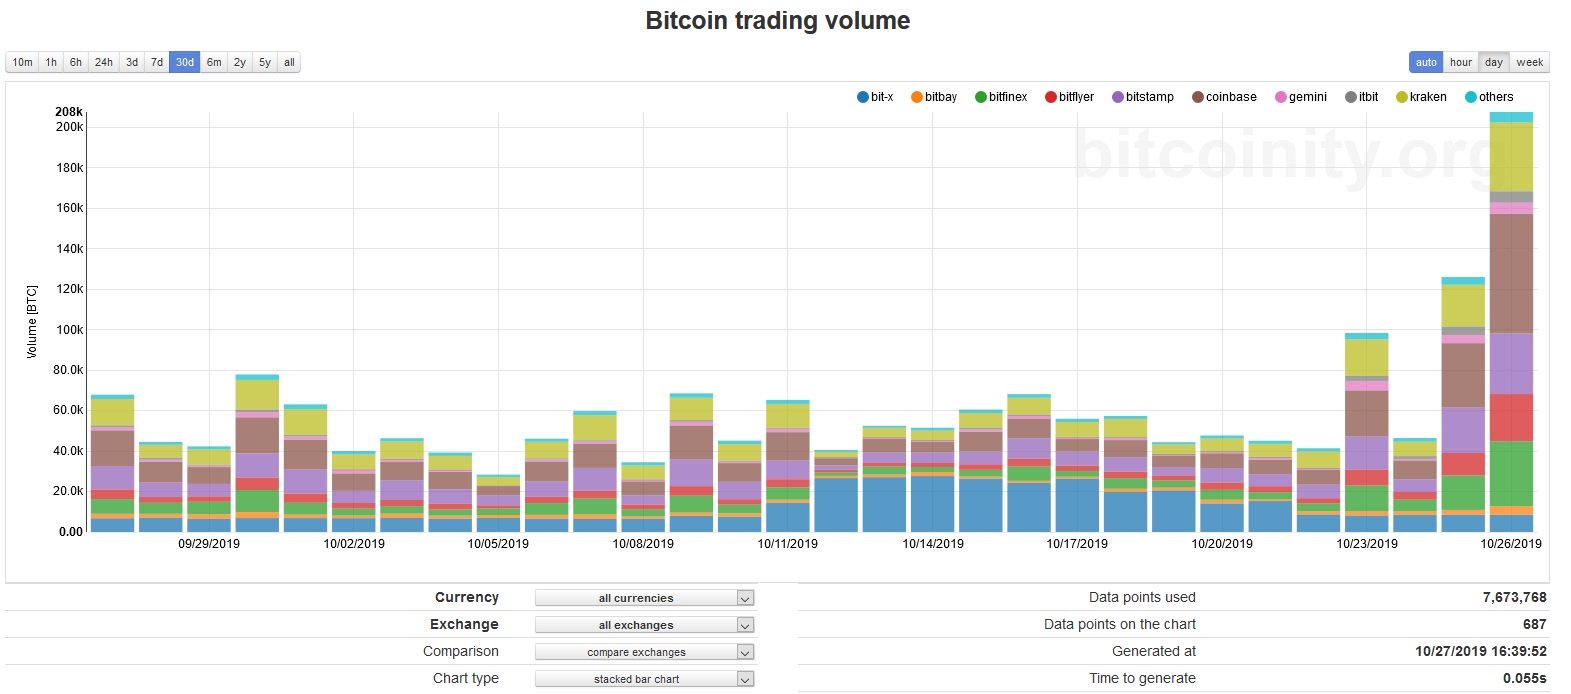 Bitcoin volume data